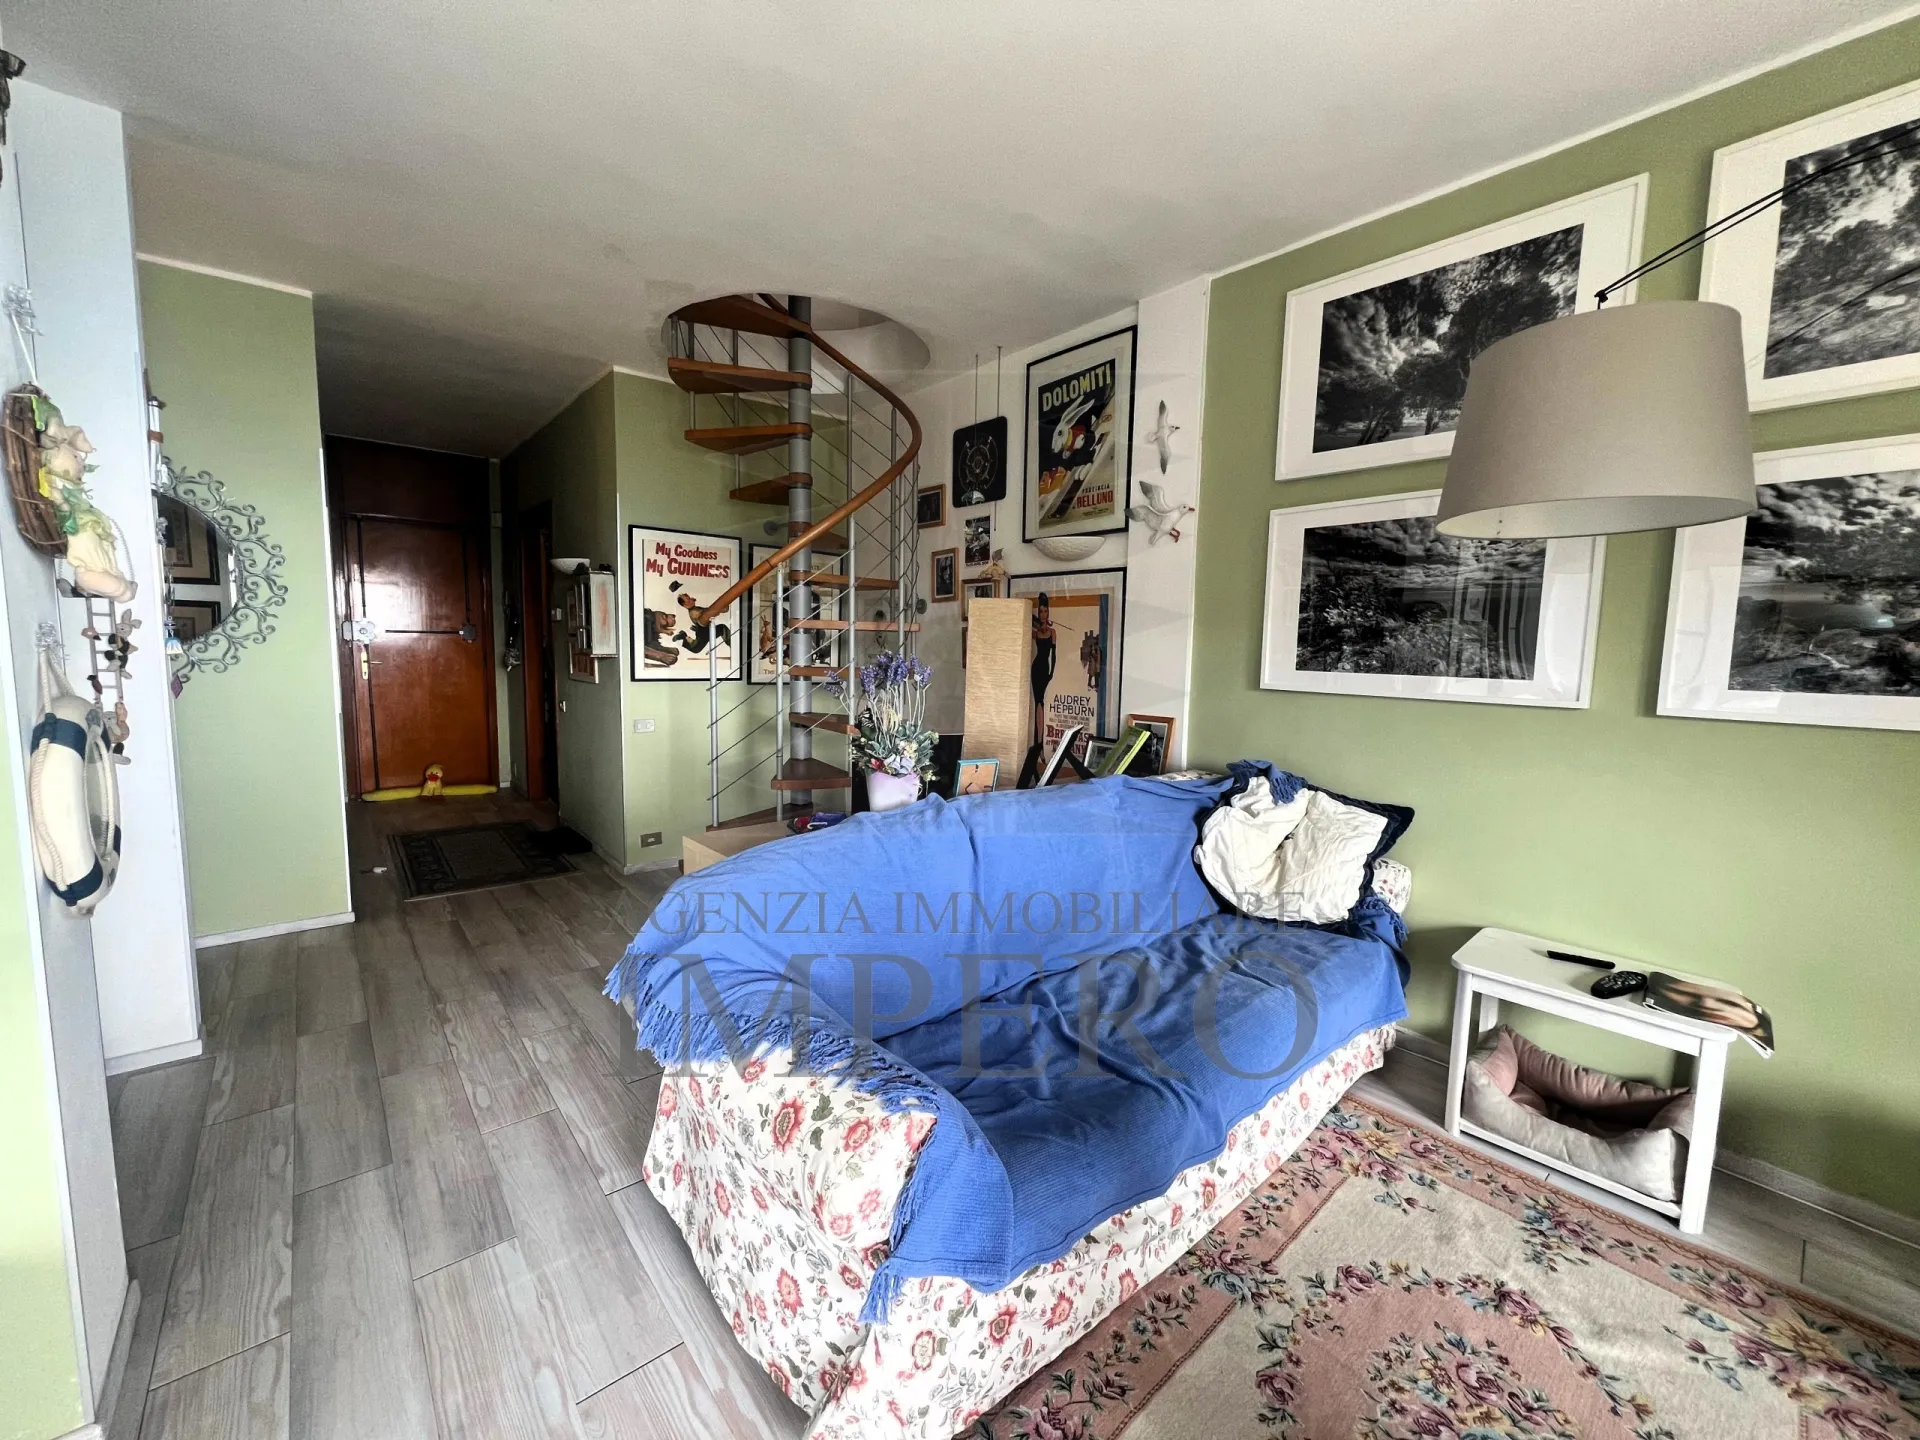 Immagine per Appartamento in vendita a Ventimiglia via Alpe Summa 77